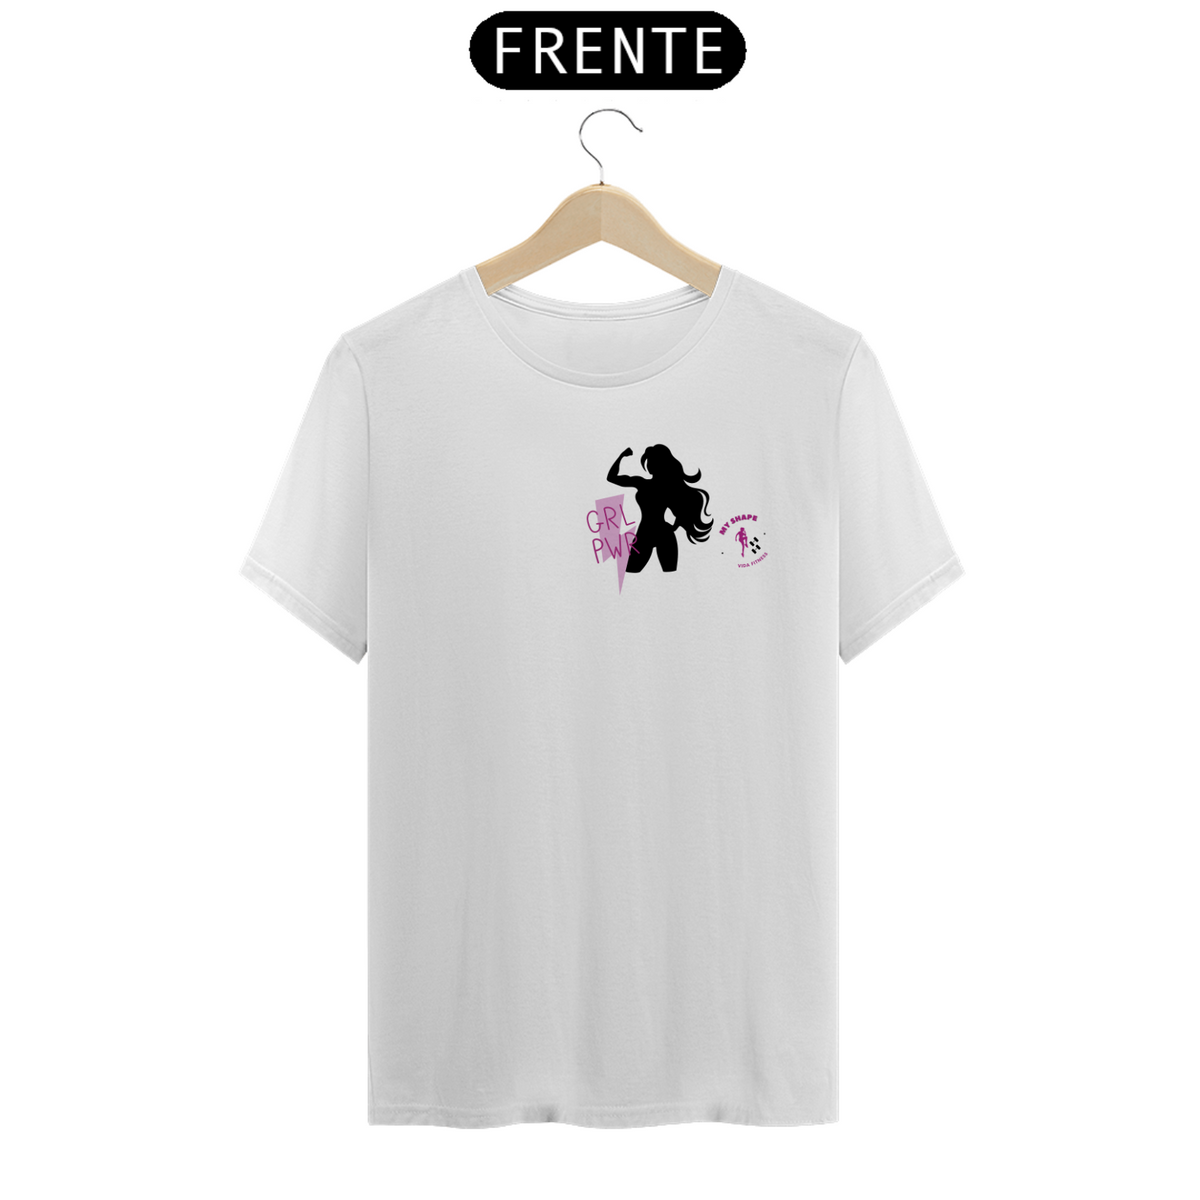 Nome do produto: T-shirt Algodão feminina GRL PWR branca, rosa e cinza 